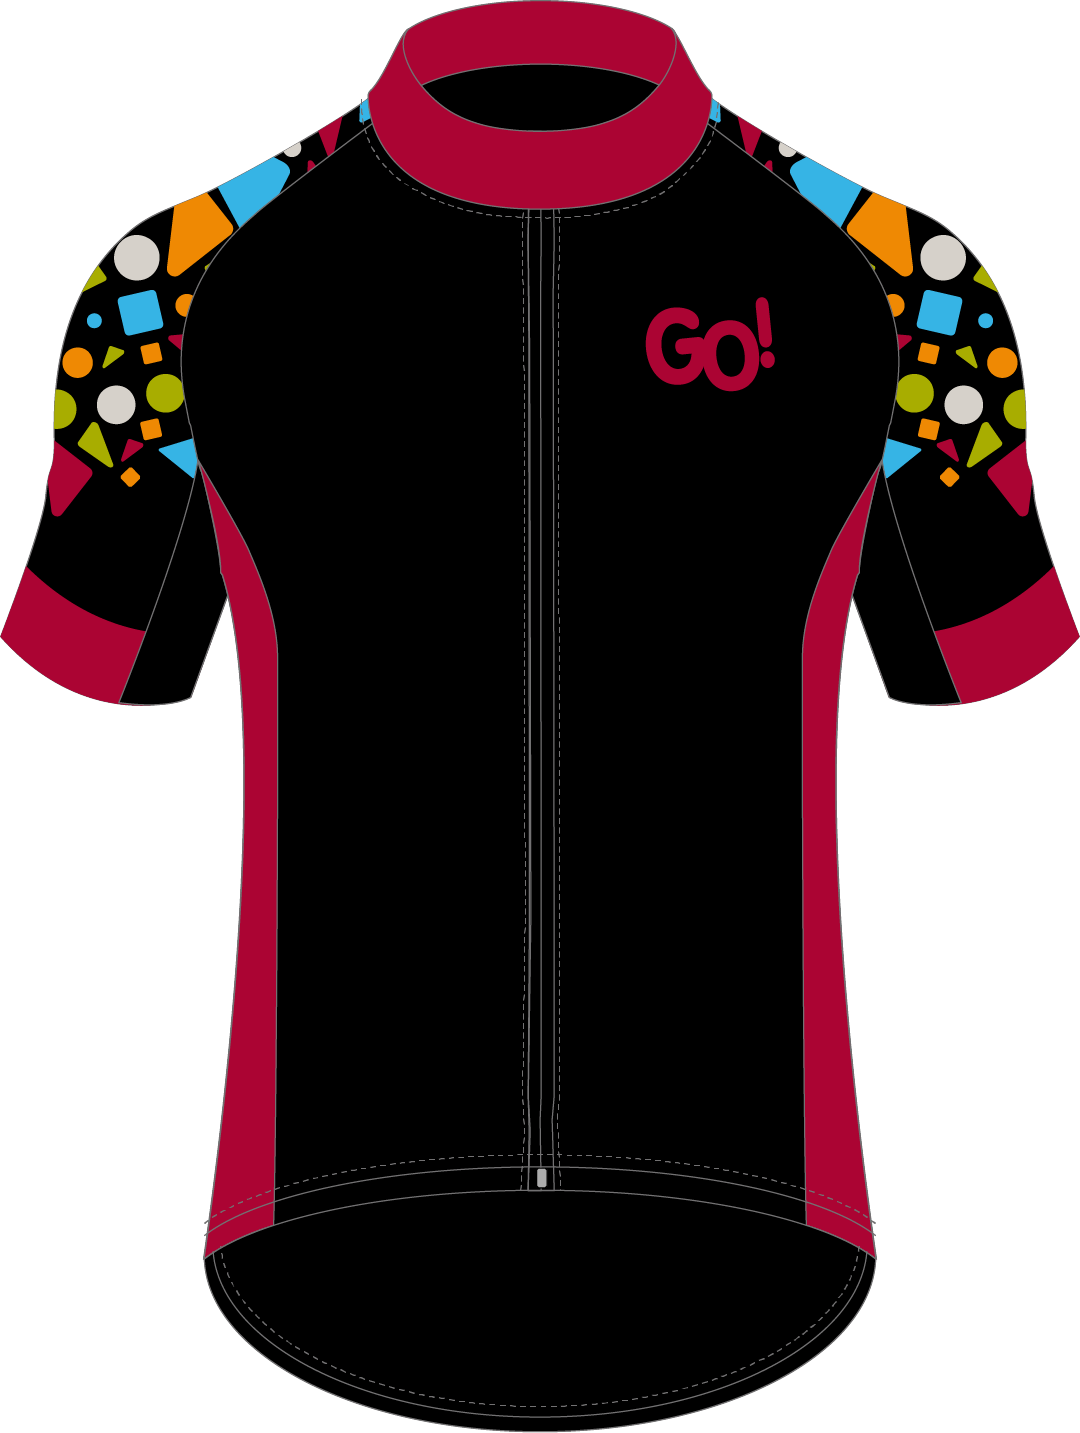 Zwart Wielertruitje Met 'GO!' Logo Op Borst En Kleurrijke Mouwen Met Patroon